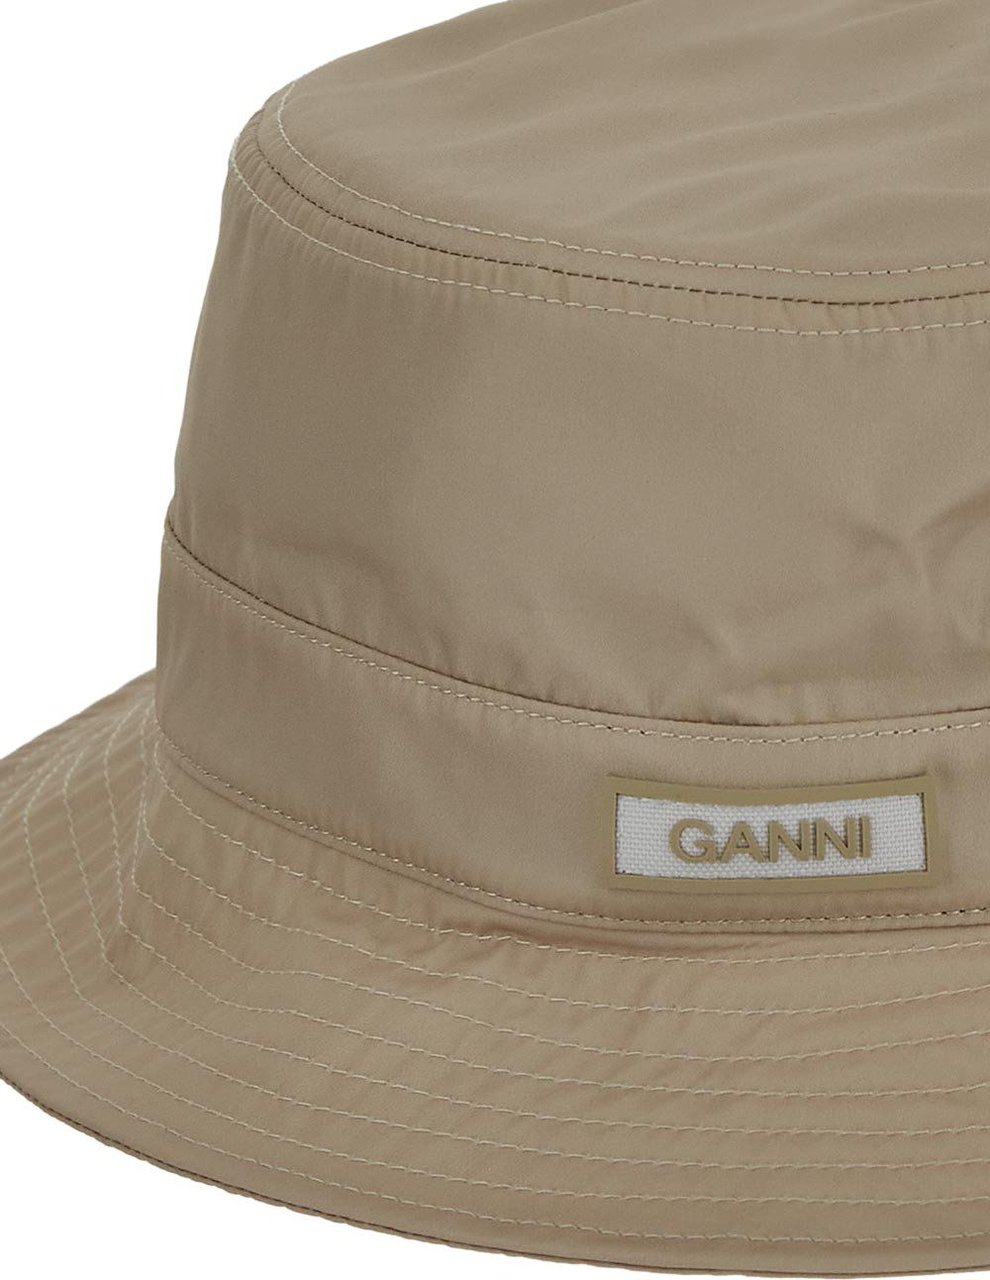 Ganni Logo Patch Bucket Hat Beige